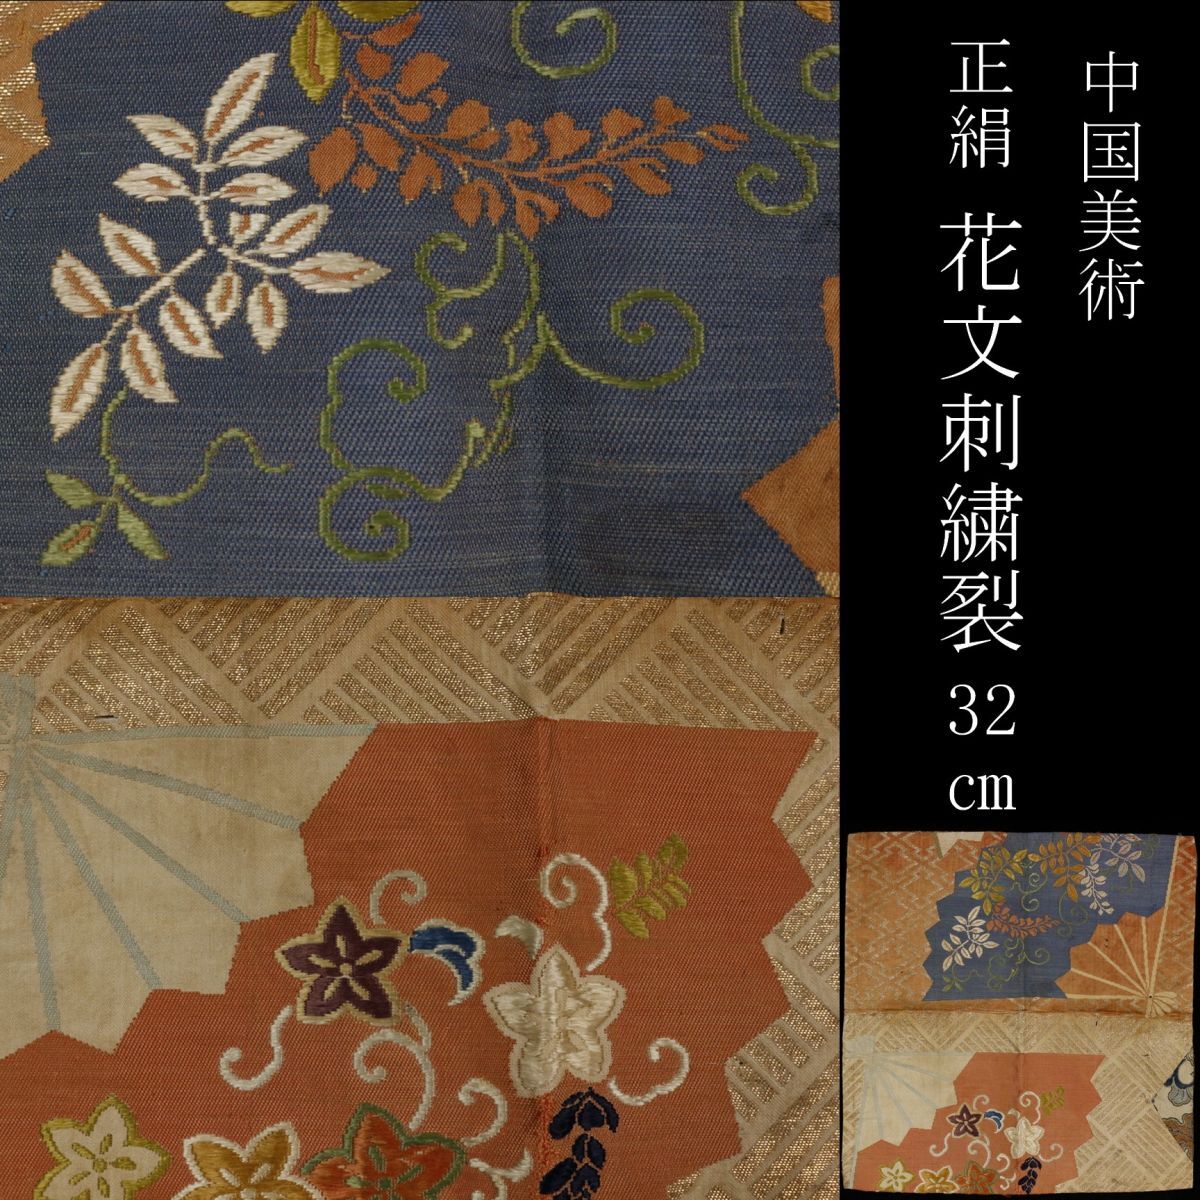 【LIG】中国美術 正絹 刺繍裂 花文刺繍 32㎝ 古布 金襴 中国古玩 コレクター収蔵品 [P]24.5_画像1